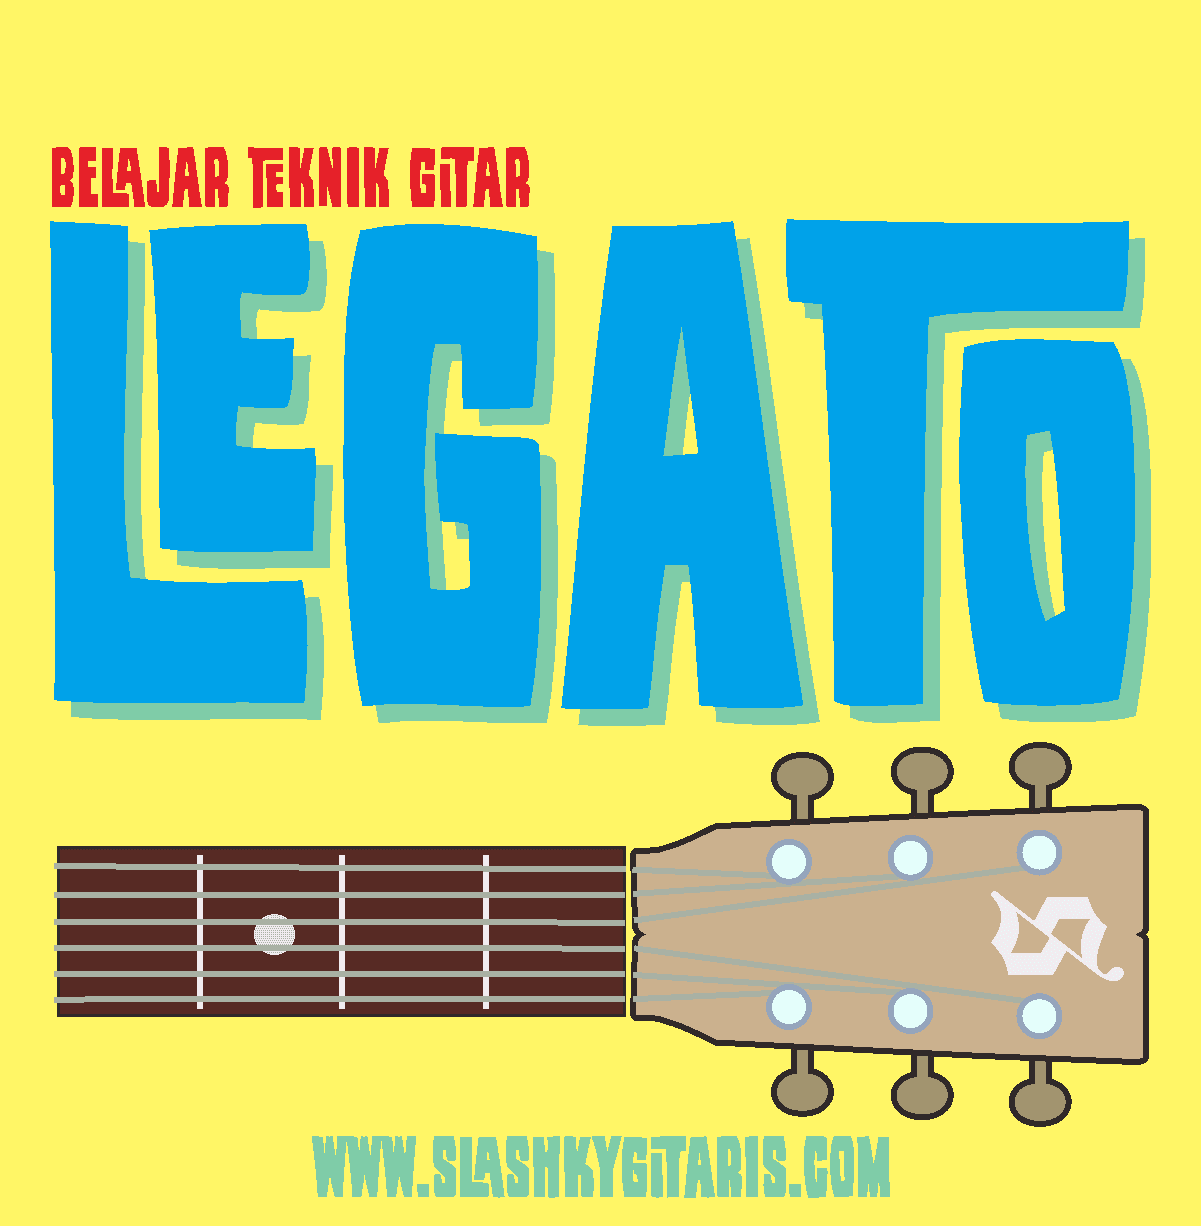 teknik gitar, teknik melodi, teknik legato, legato, C major scale, latihan legato, legato exercise, 